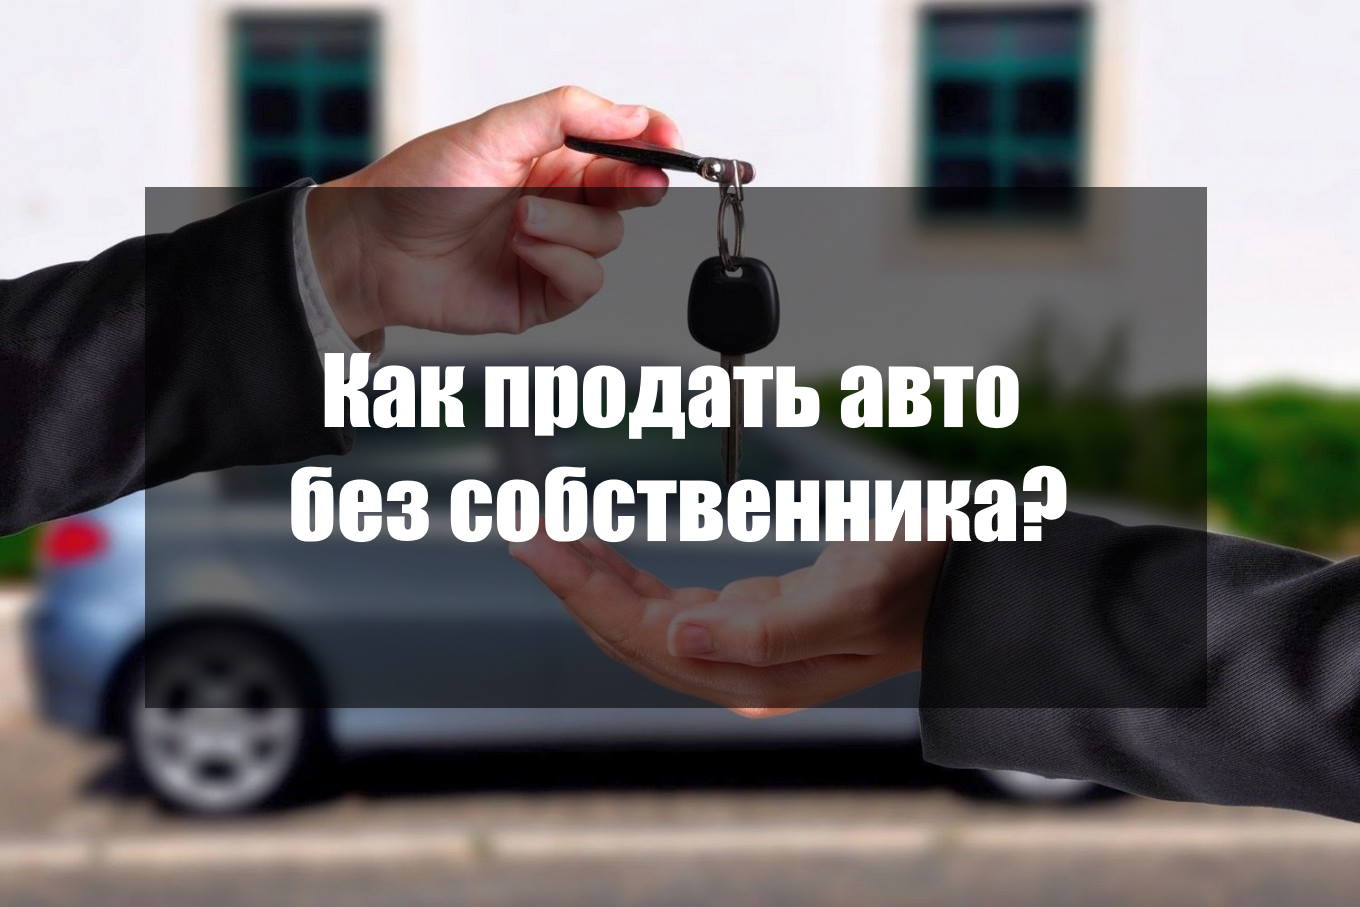 Переоформить машину без собственника. Как продать авто. Можно ли забрать машину со штрафстоянки под расписку собственника. Зарегистрировать авто в Луганске без присутствия владельца.